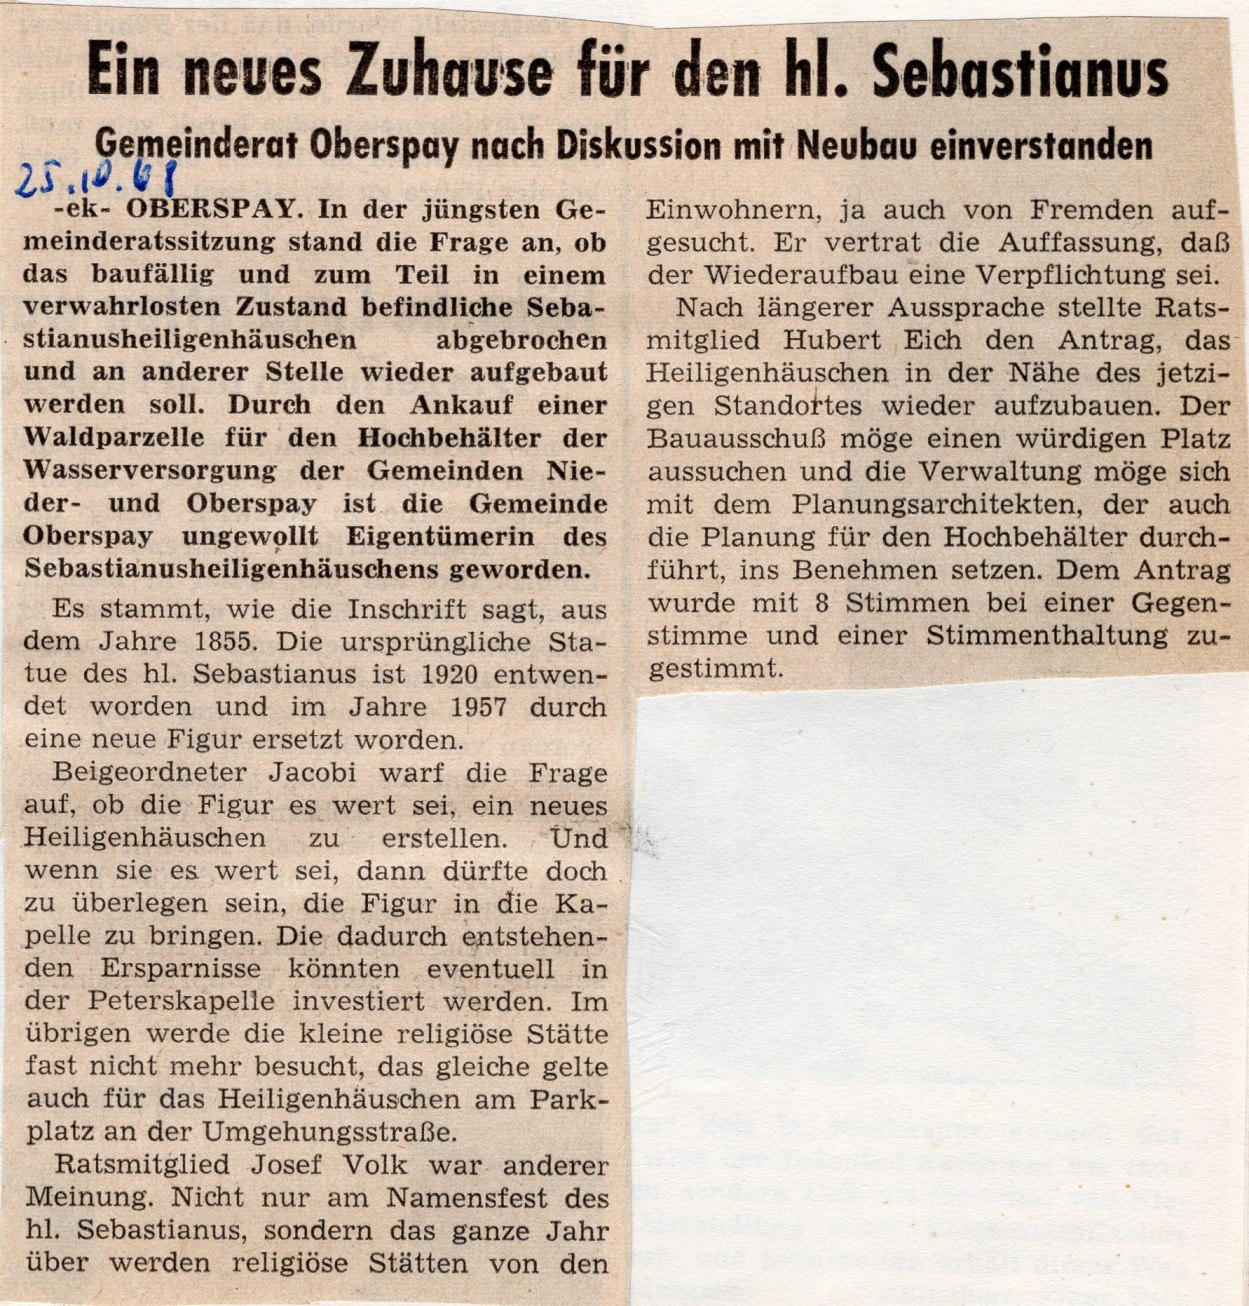 Mit freundlicher Genehmigung der "Rhein-Zeitung“.